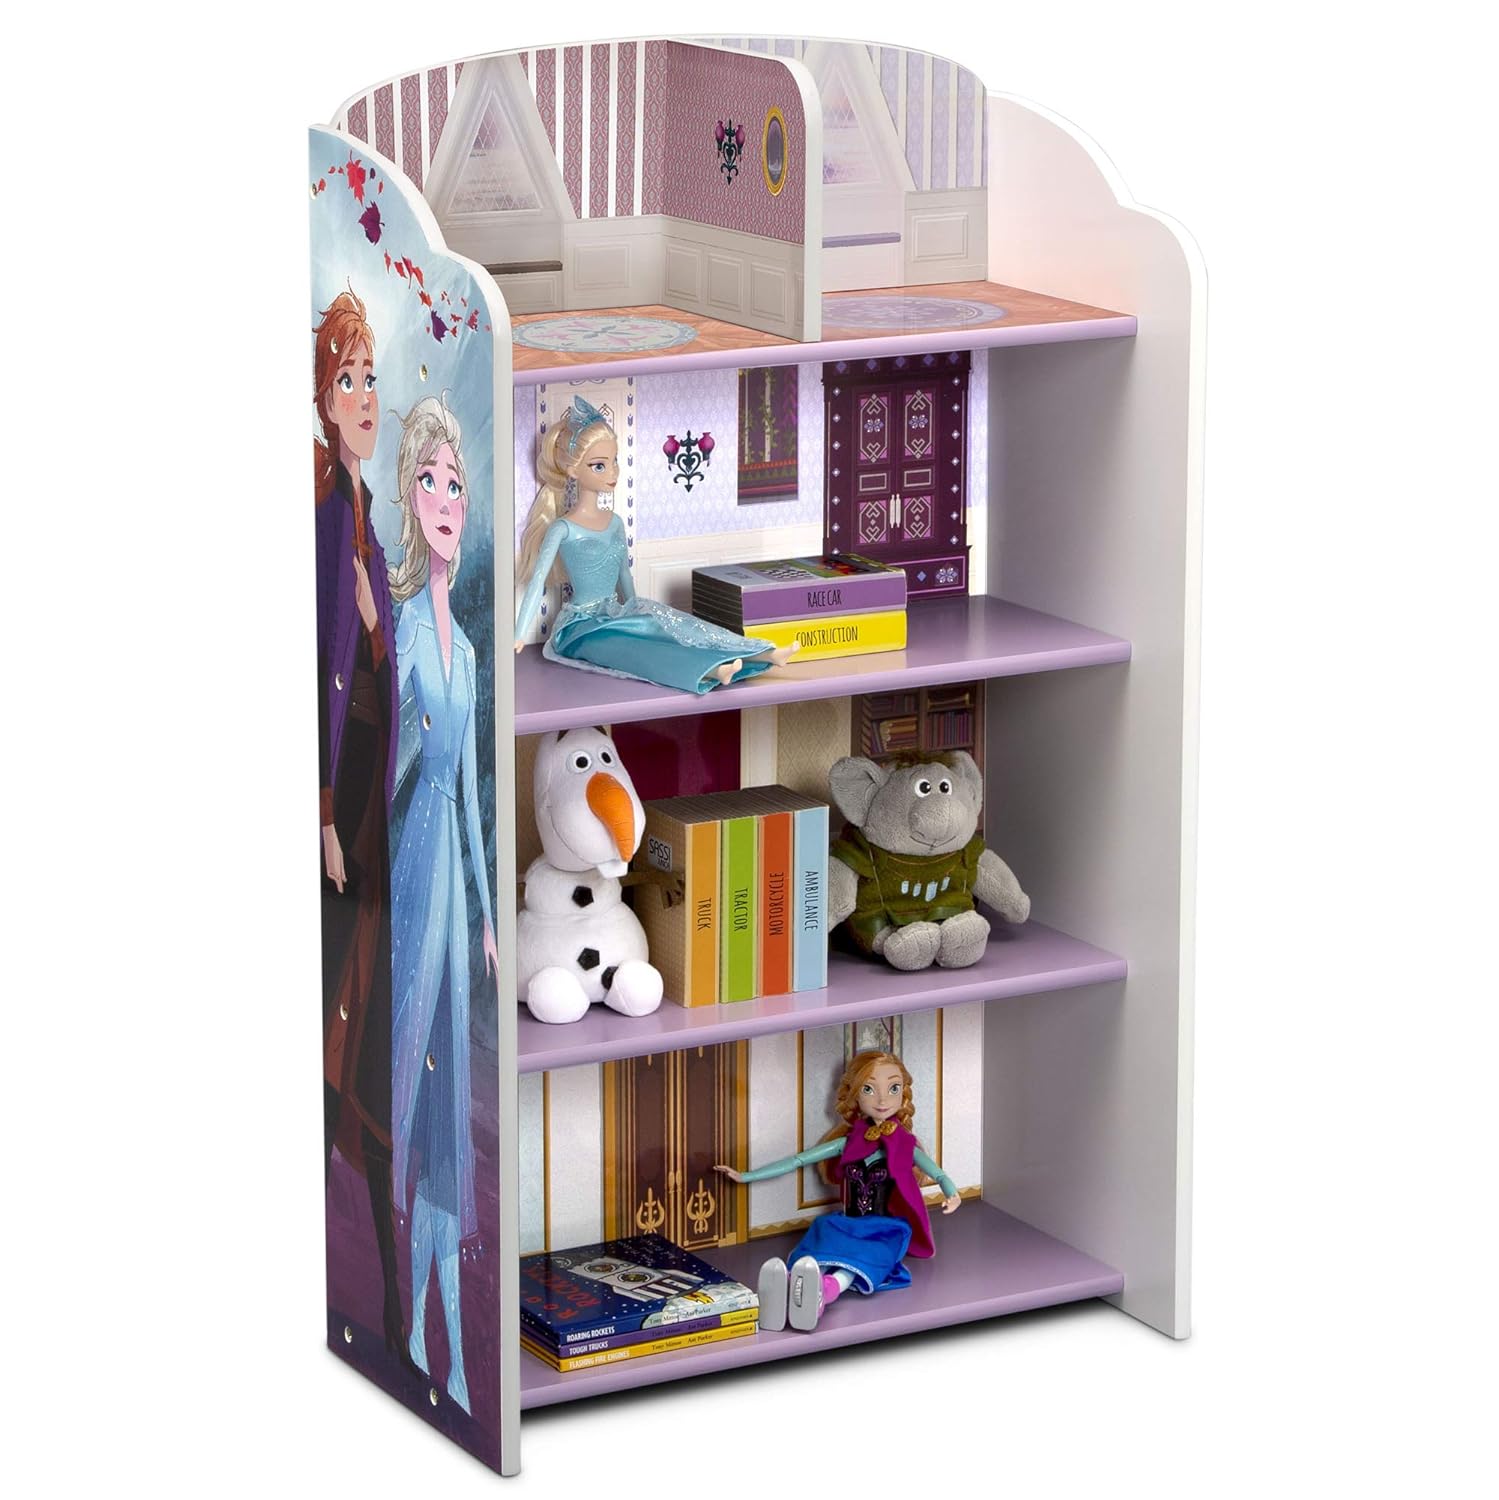 Delta Children Wooden Playhouse 4-Shelf Bookcase for Kids